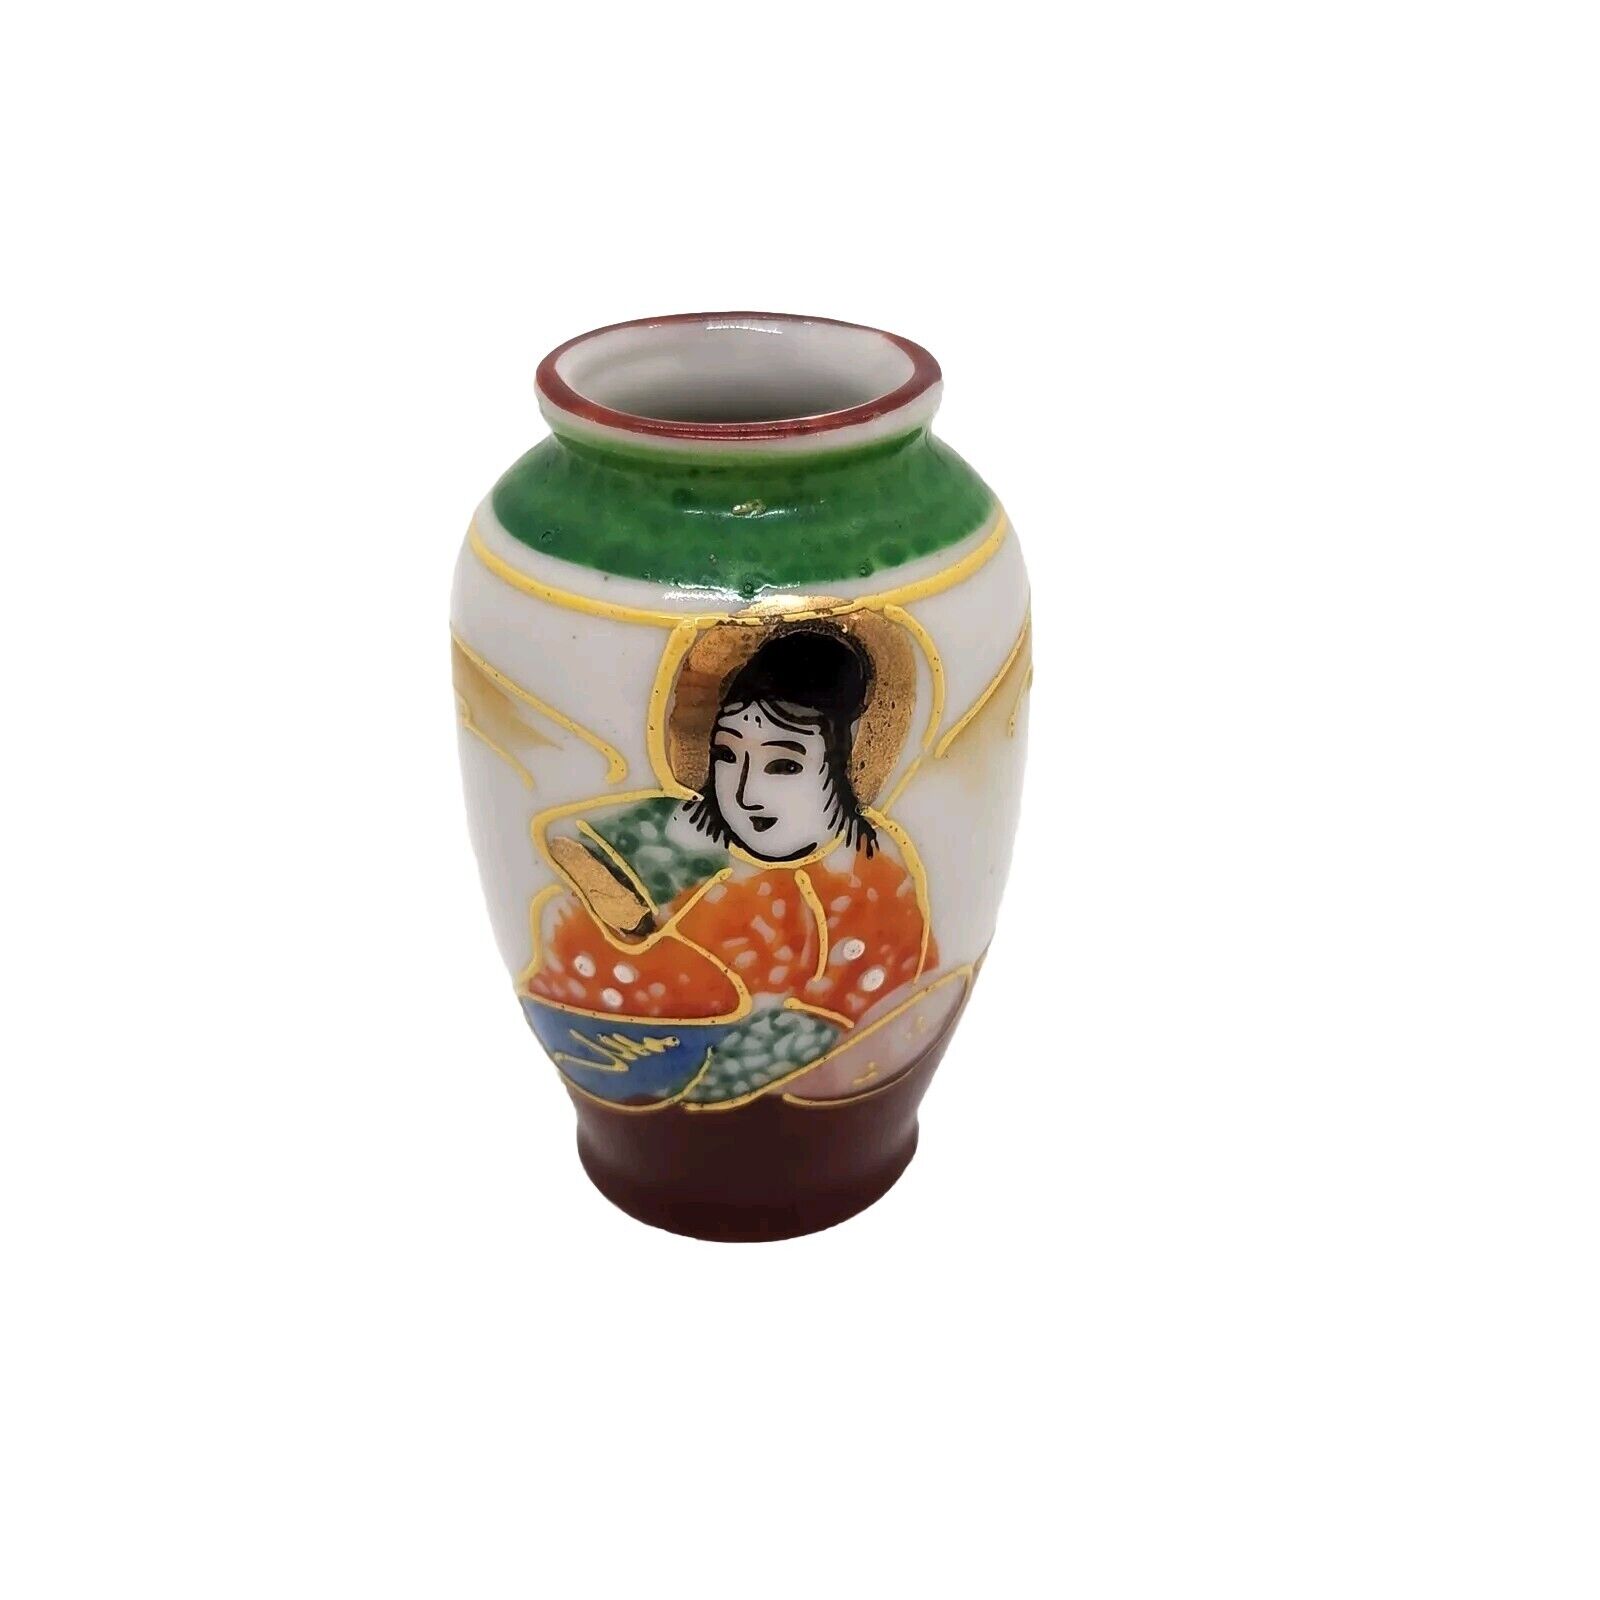 Vintage Made in Occupied Japan Miniature Porcelain Decorative Vase 2.5\